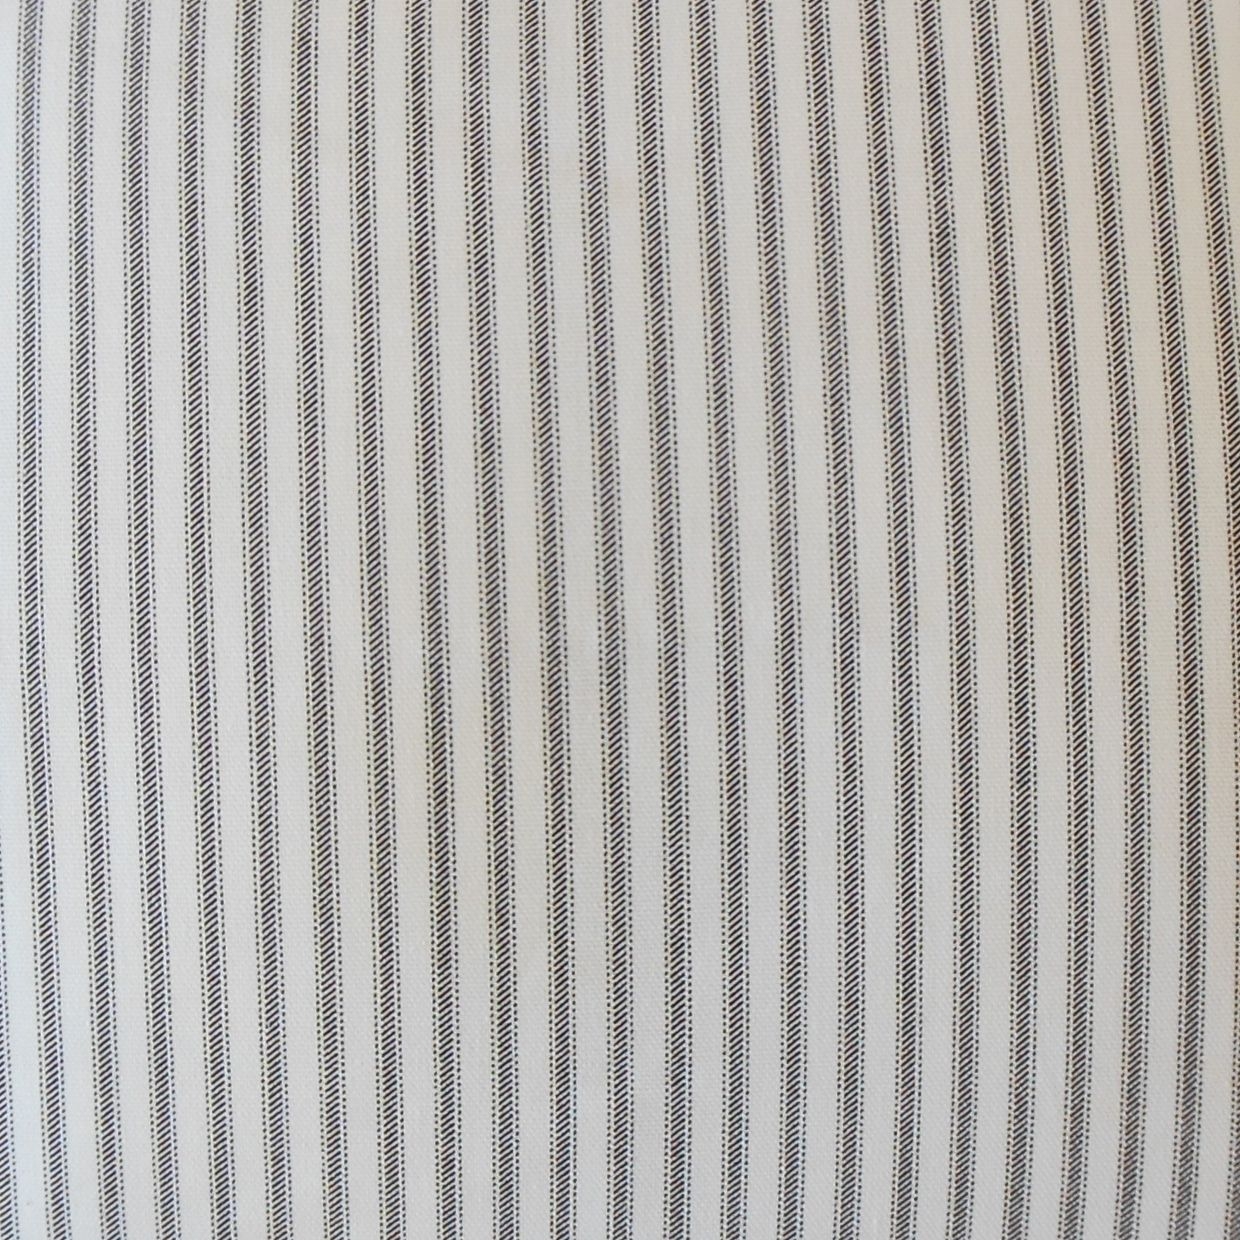 Ticking Stripe Pillow, Navy, 18" x 18" - Image 1